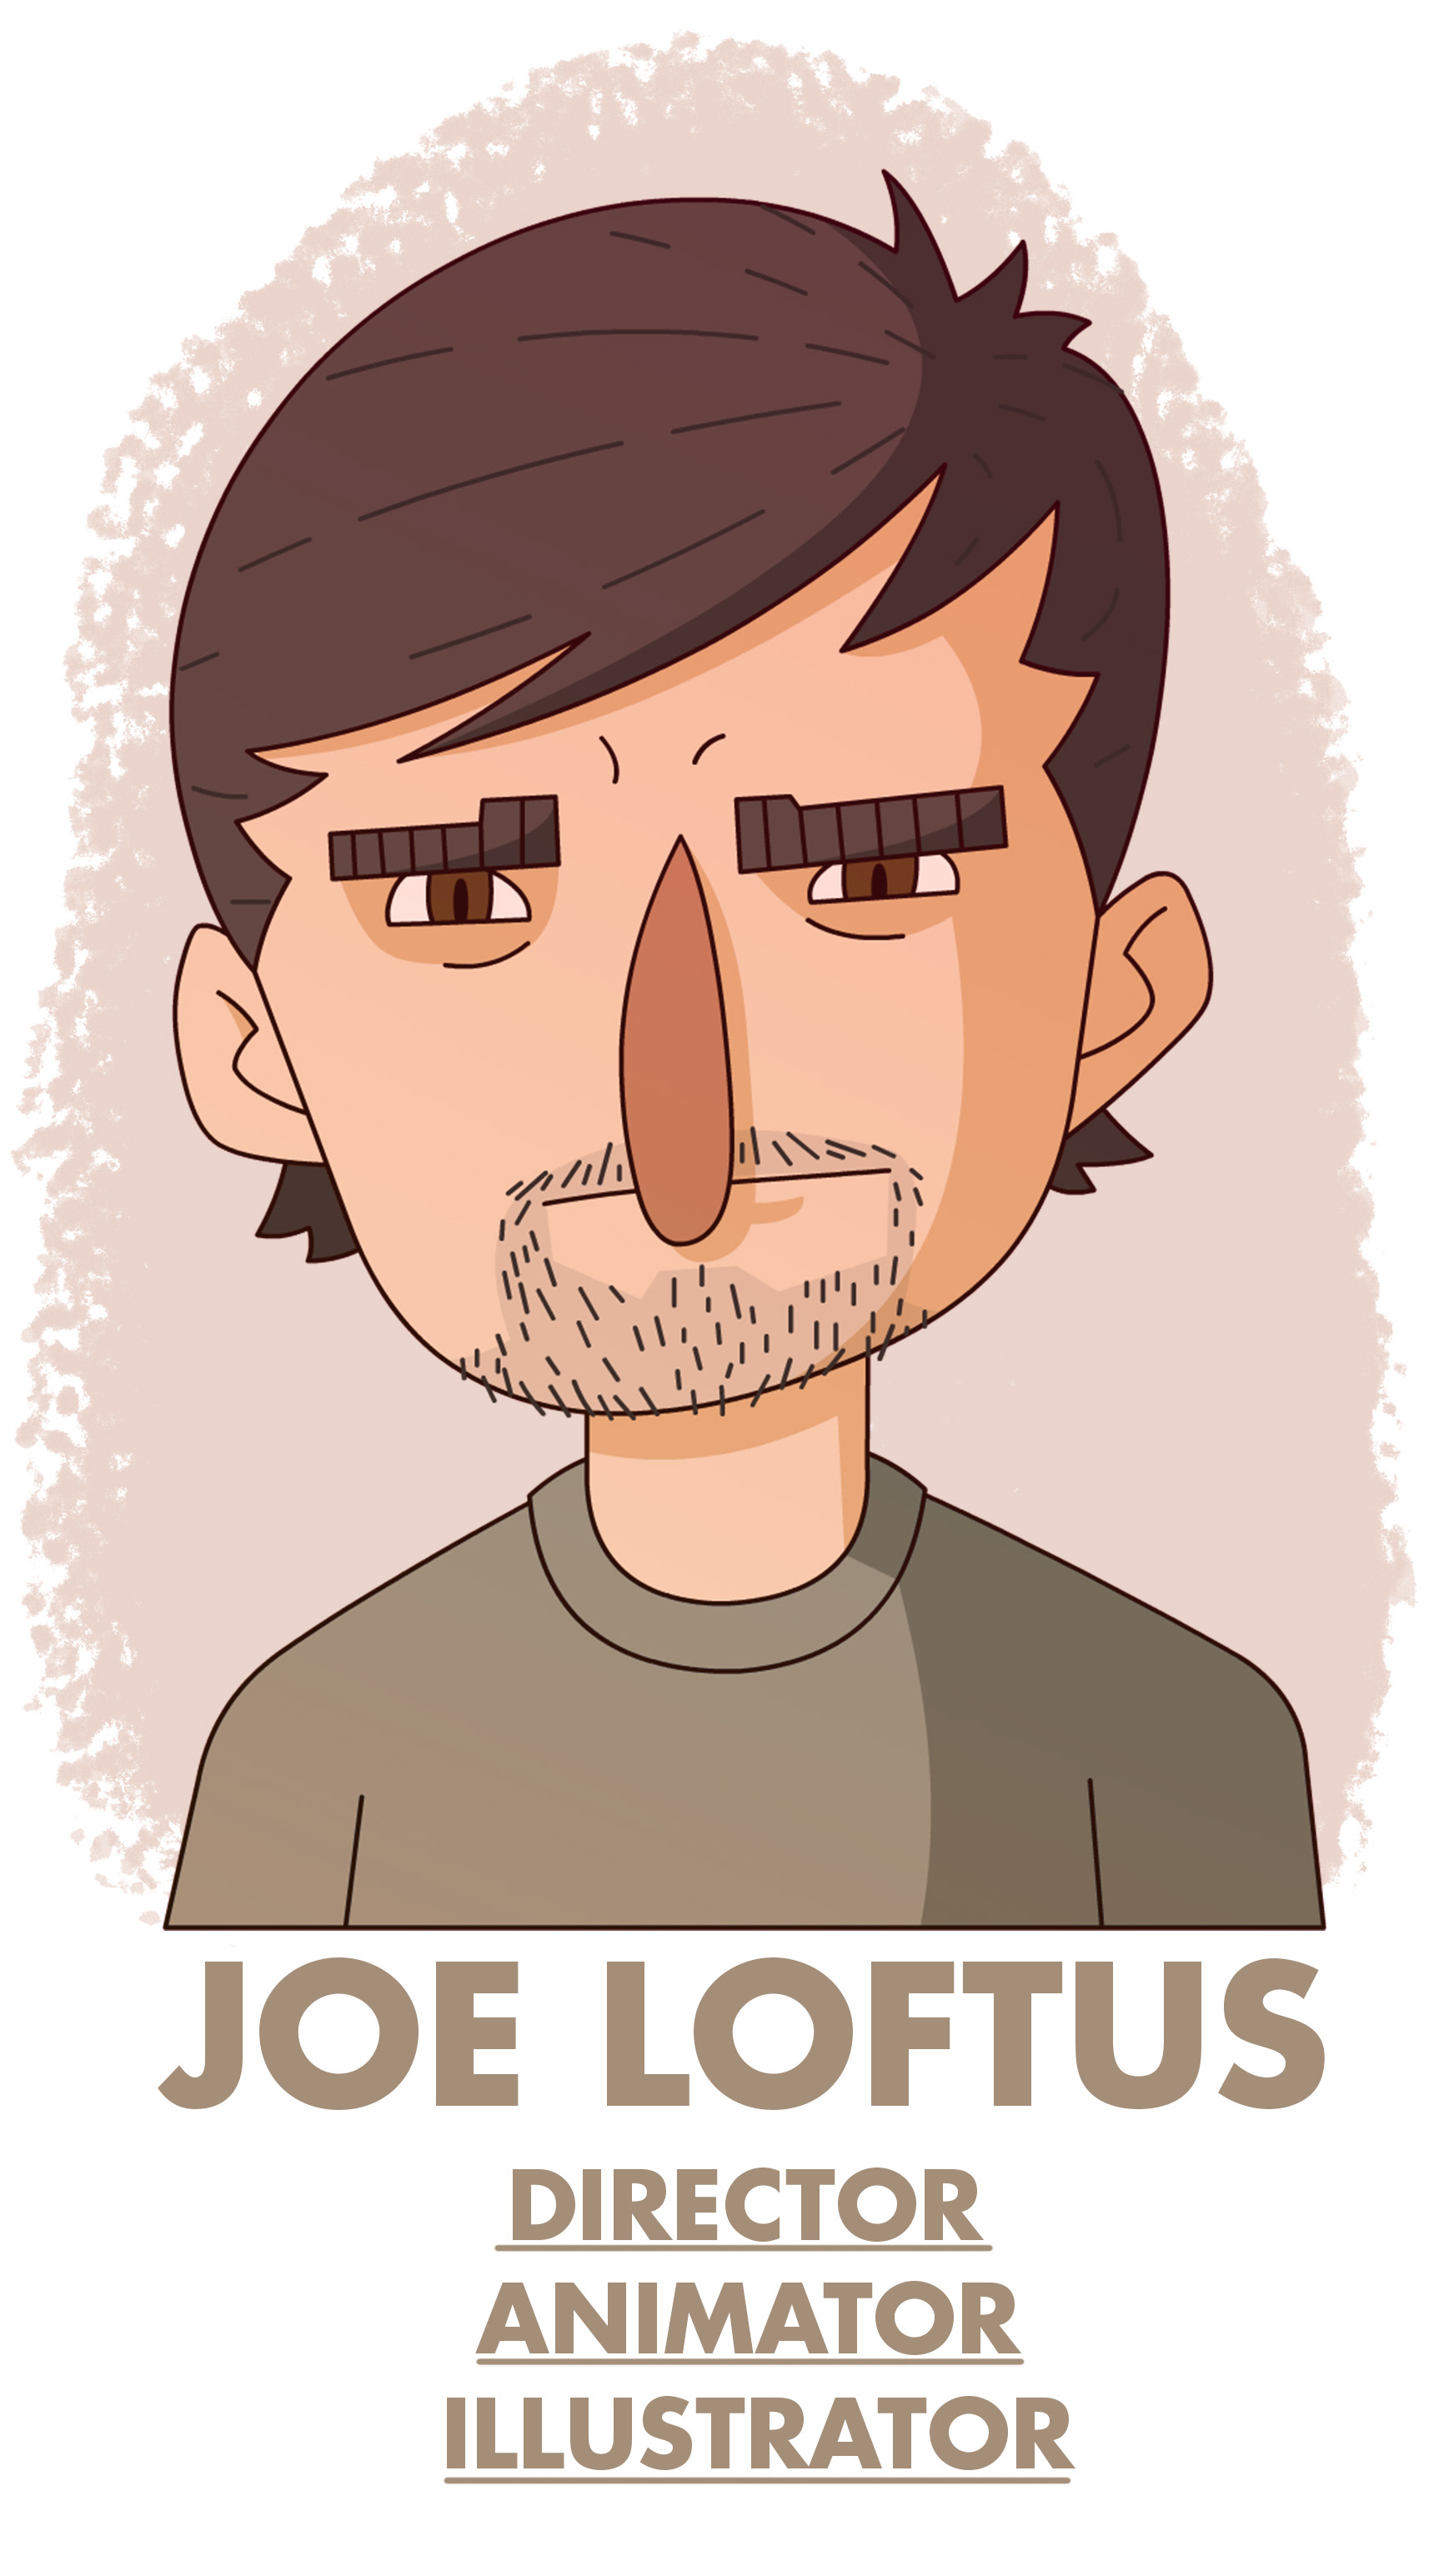 Joe Loftus